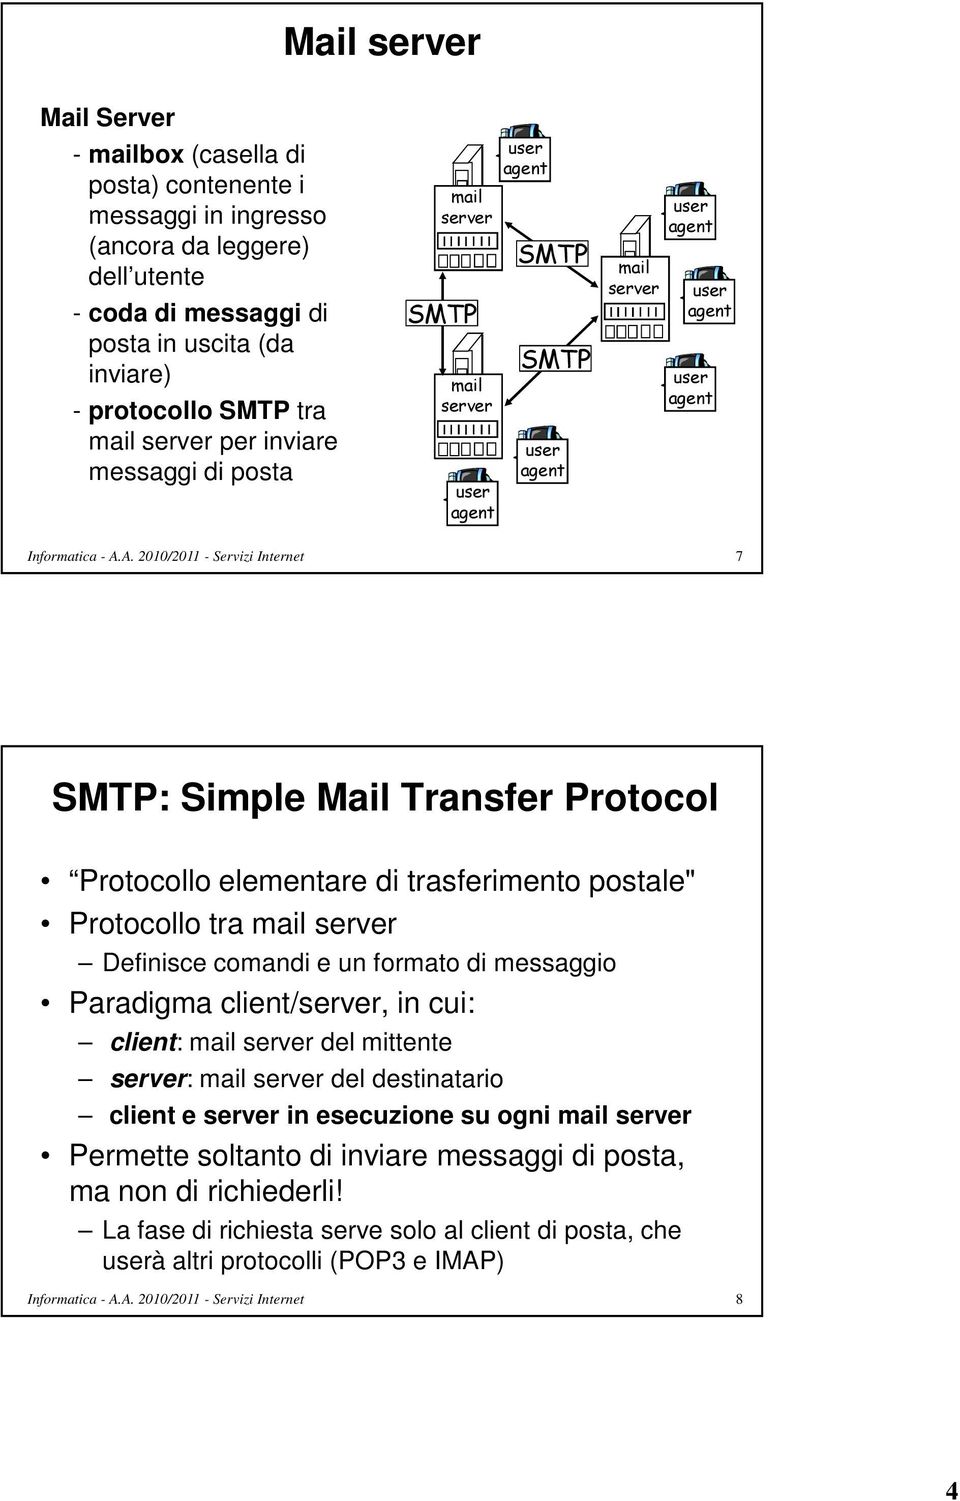 Protocollo elementare di trasferimento postale" Protocollo tra mail server Definisce comandi e un formato di messaggio Paradigma client/server, in cui: client: mail server del mittente server: mail